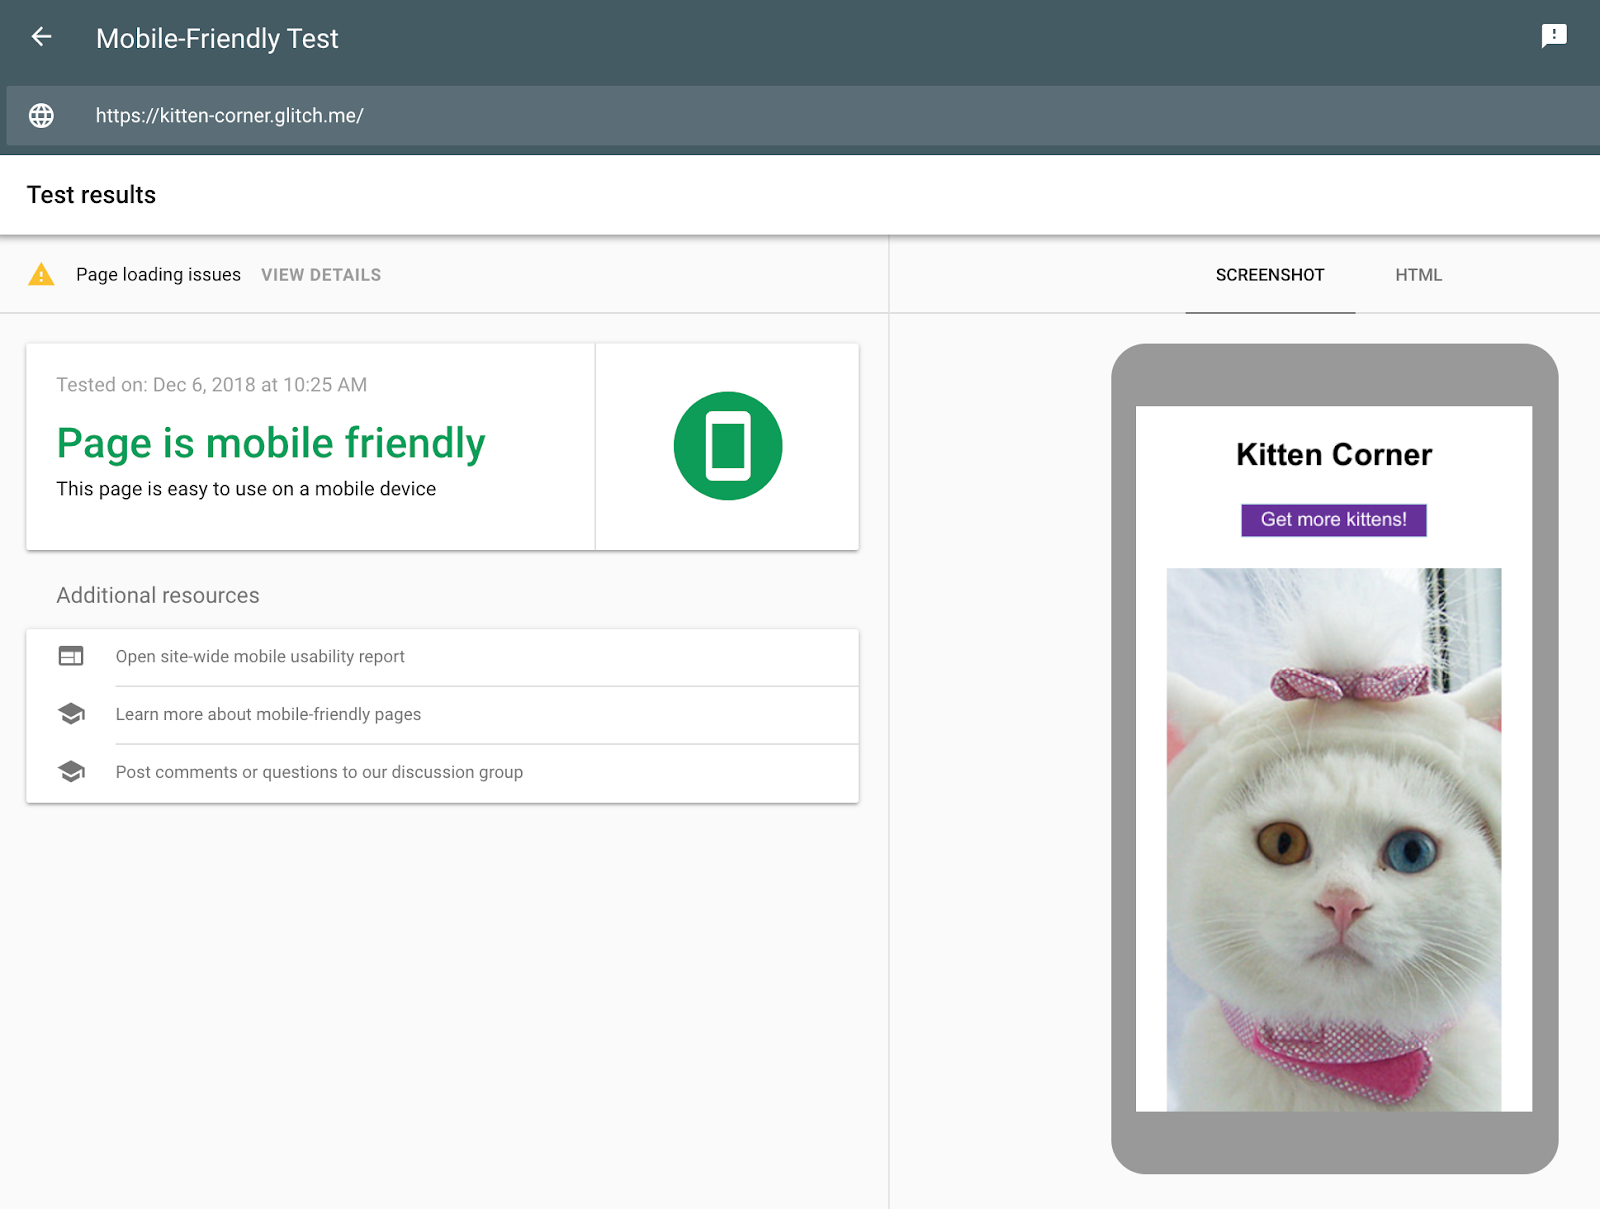 Pengujian Situs Mobile-Friendly menunjukkan bahwa halaman tersebut mobile-friendly dan screenshotnya sekarang
          menampilkan semua gambar kucing.